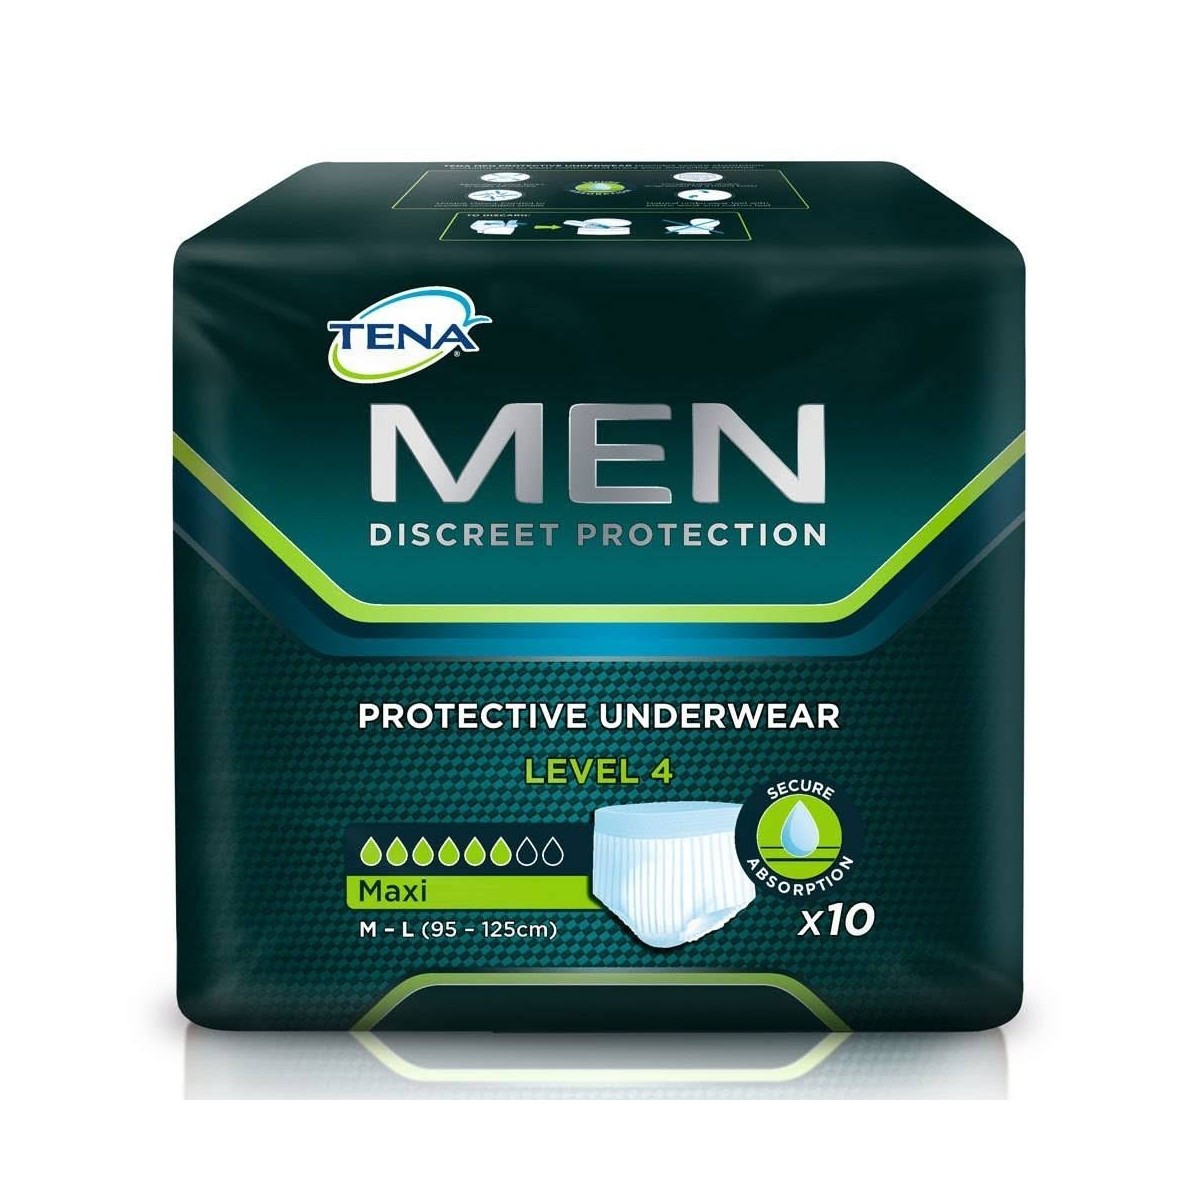 tena men protective underwear level 4 t m l